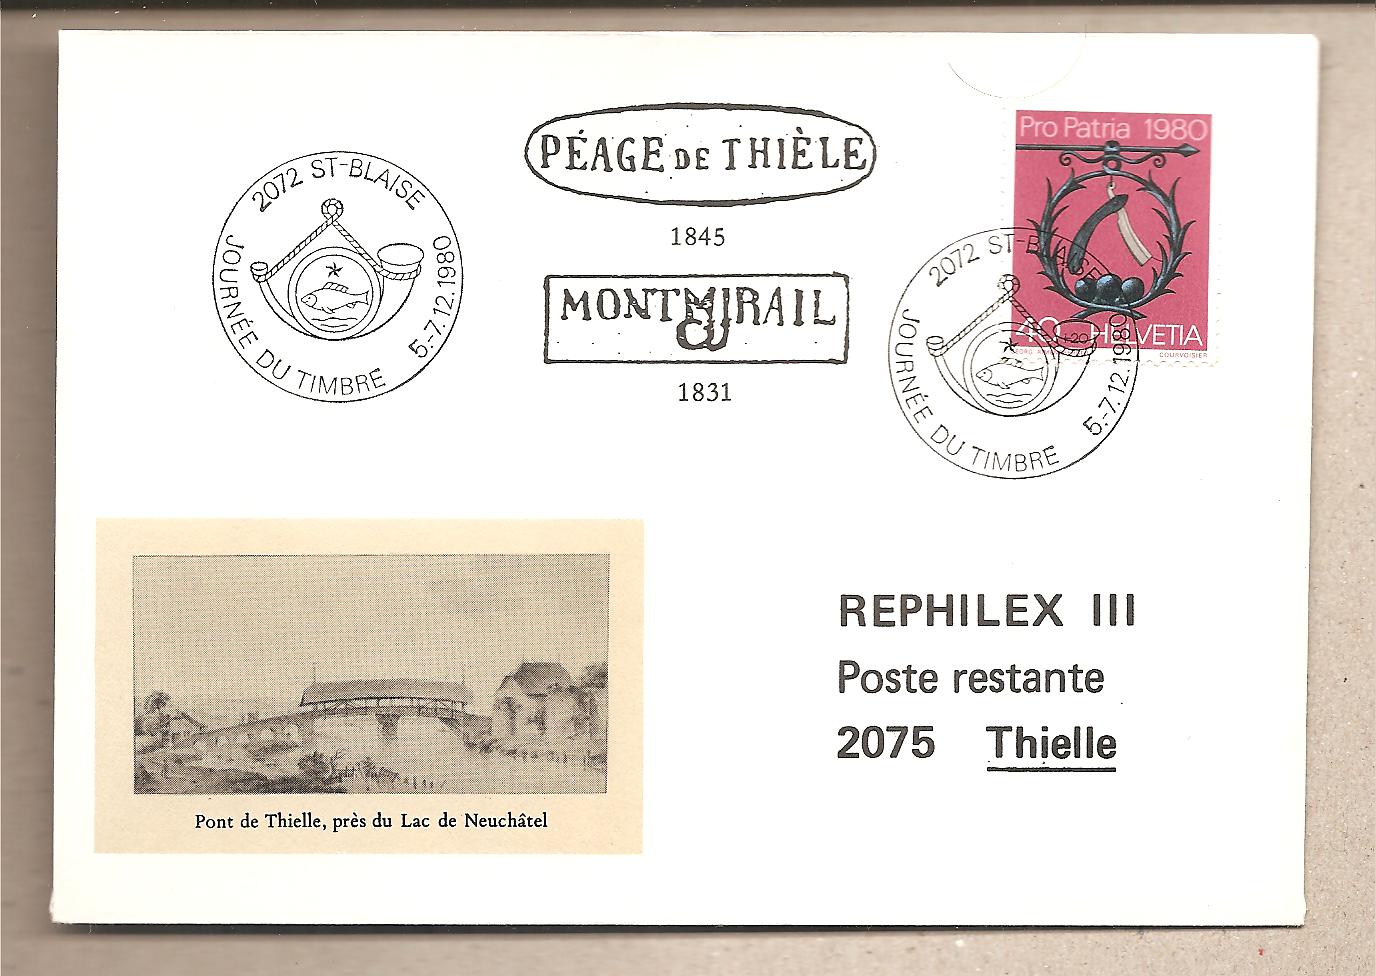 41522 - Svizzera - busta con annullo speciale: Giornata del Francobollo  Peage de Thiele  - 1980